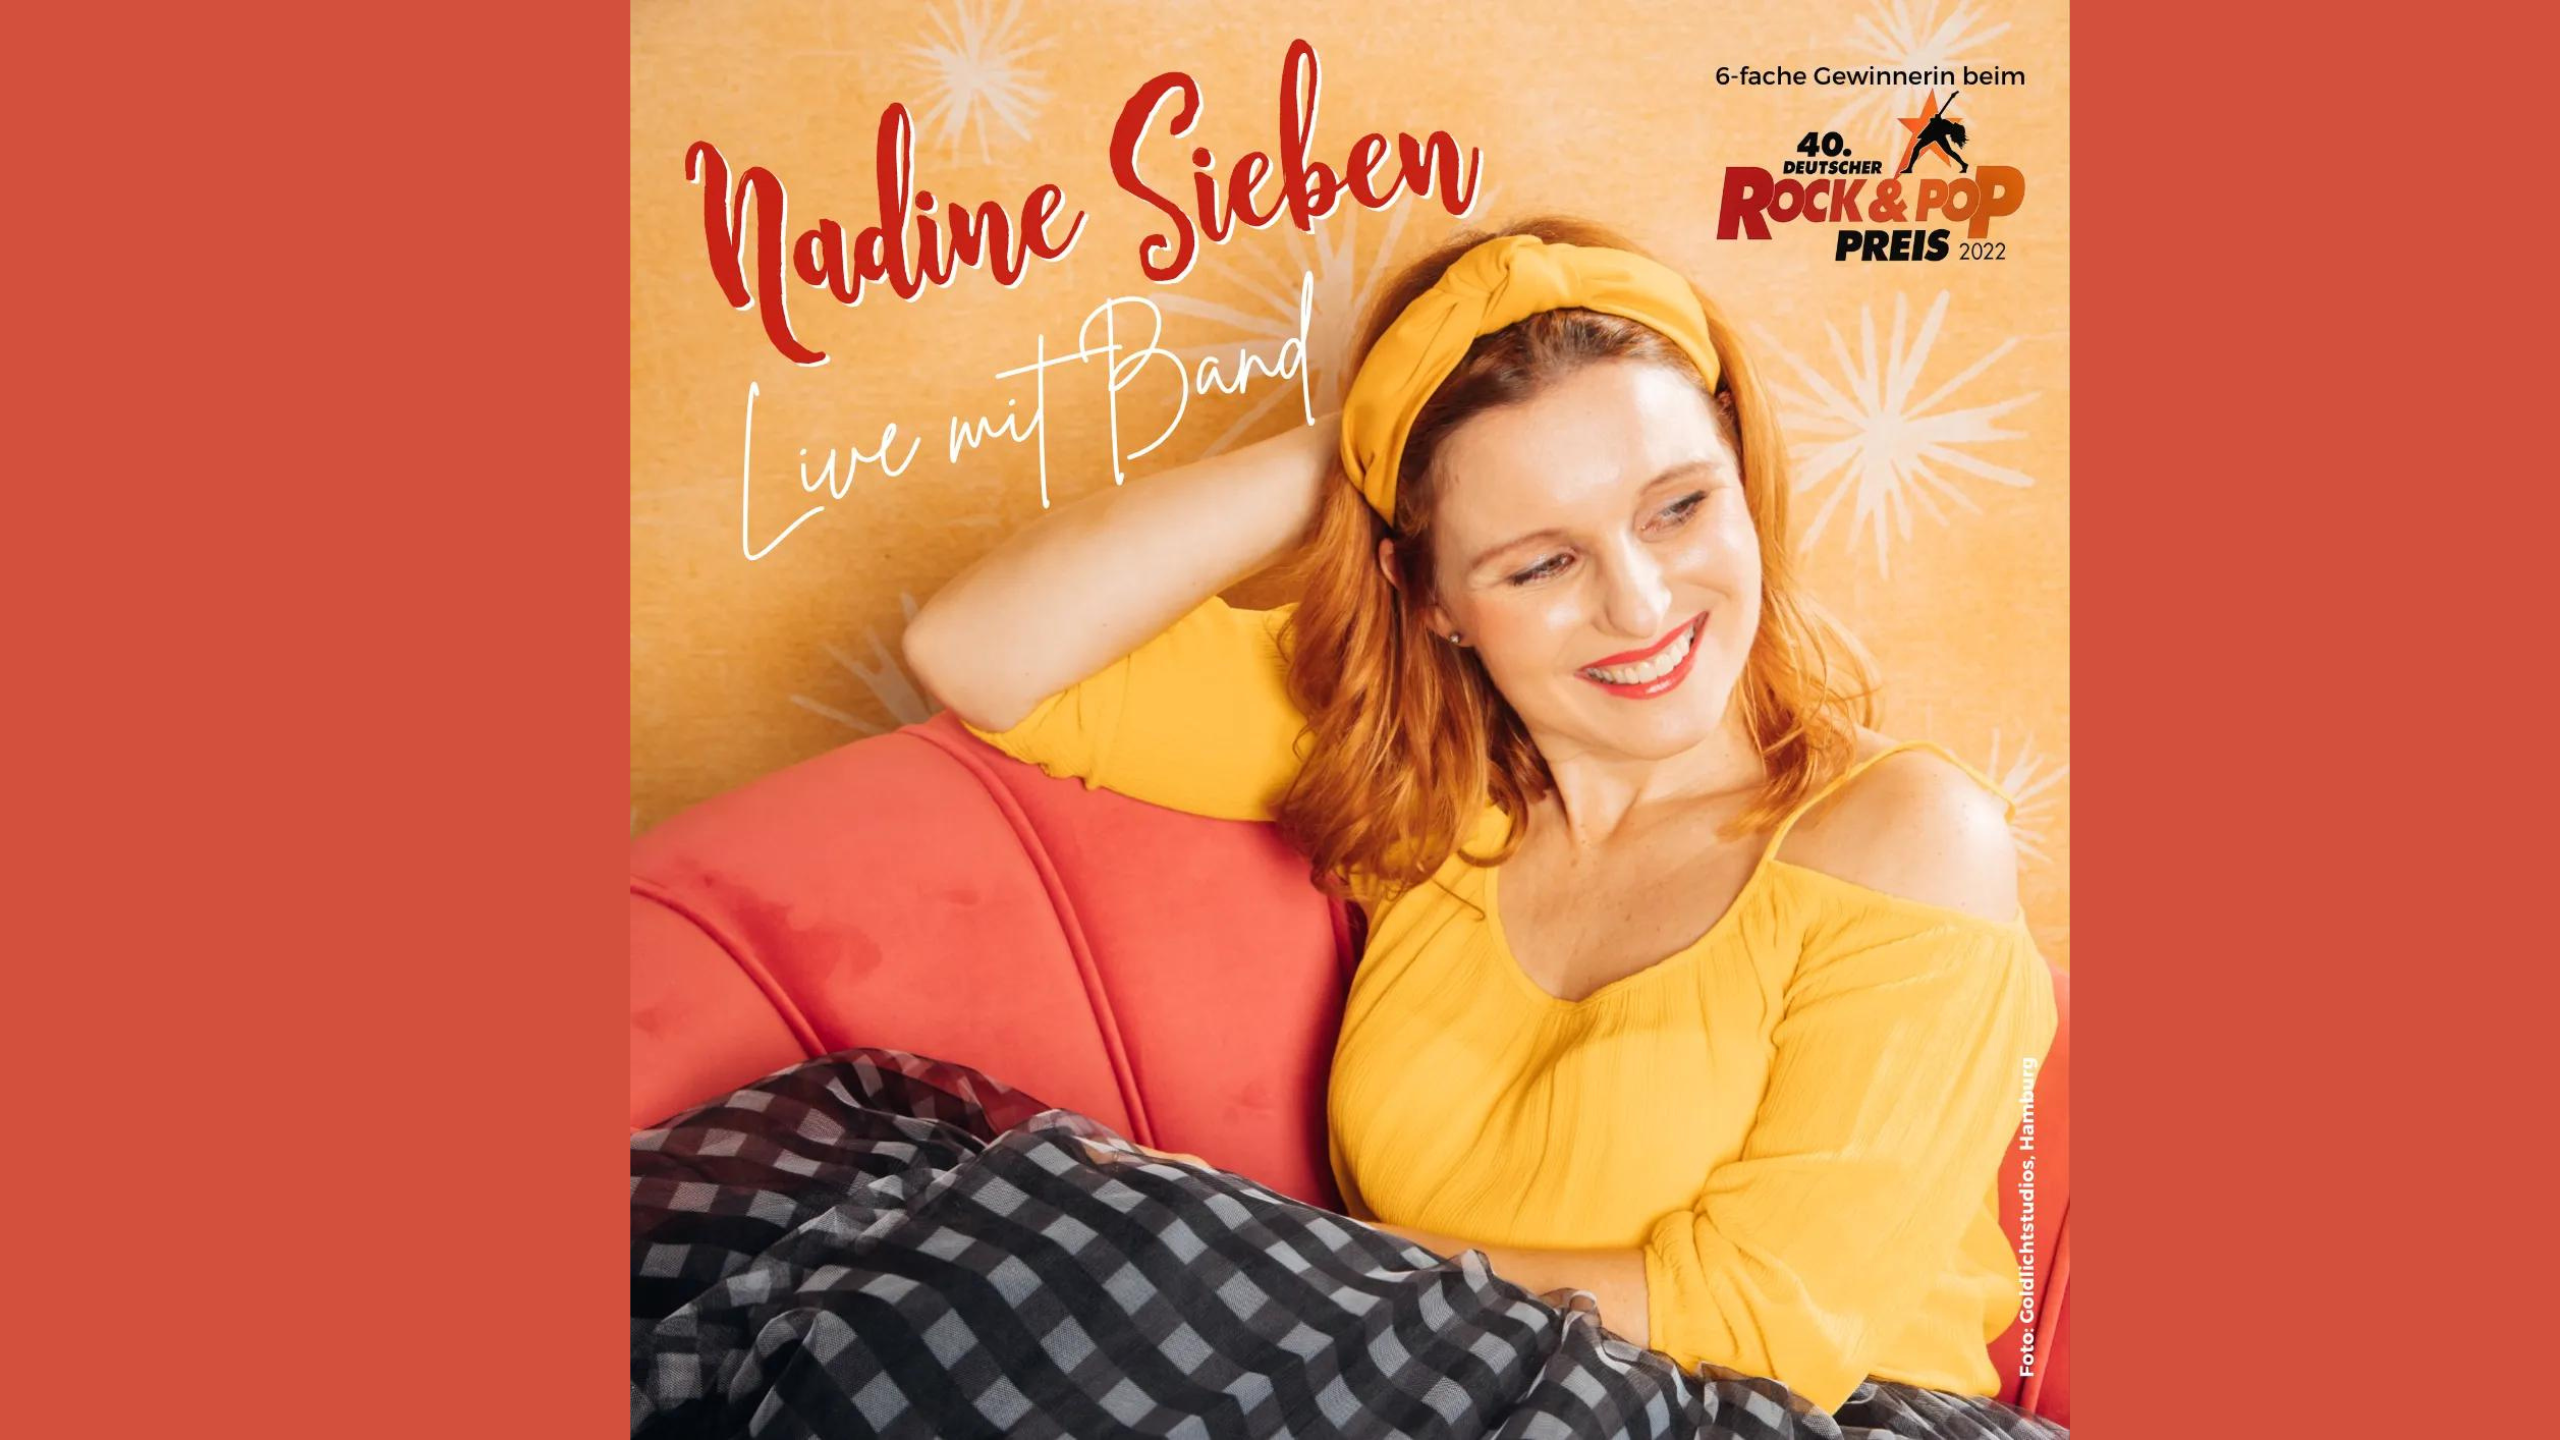 Nadine Sieben – Leben leben – Live mit Band